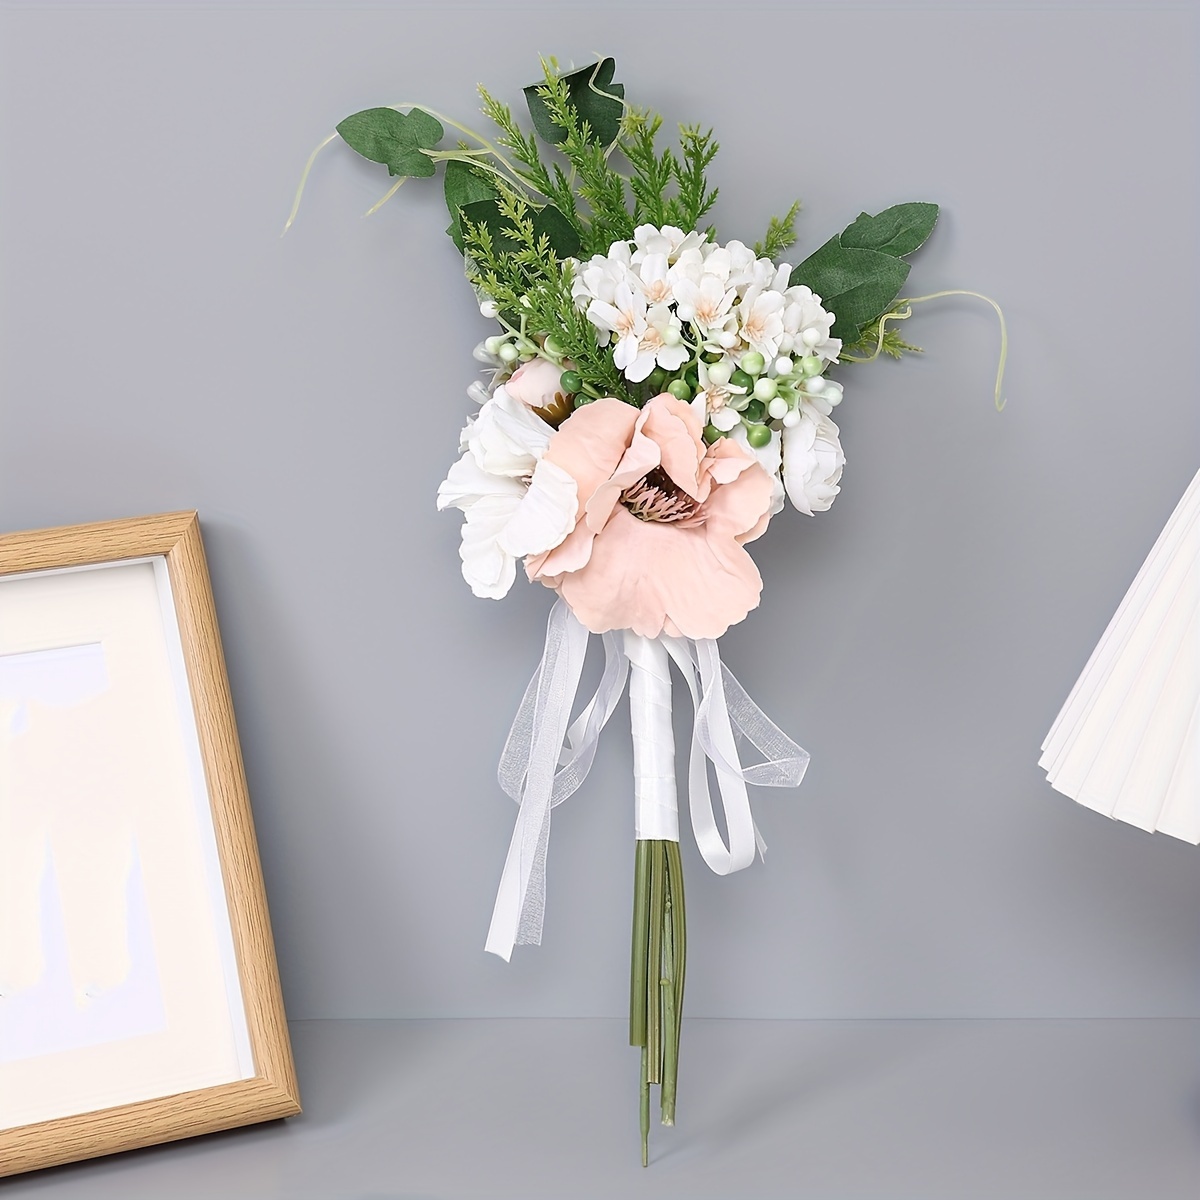 1 Bouquet Premium Wedding Bouquets For Bride Bridesmaid - Temu